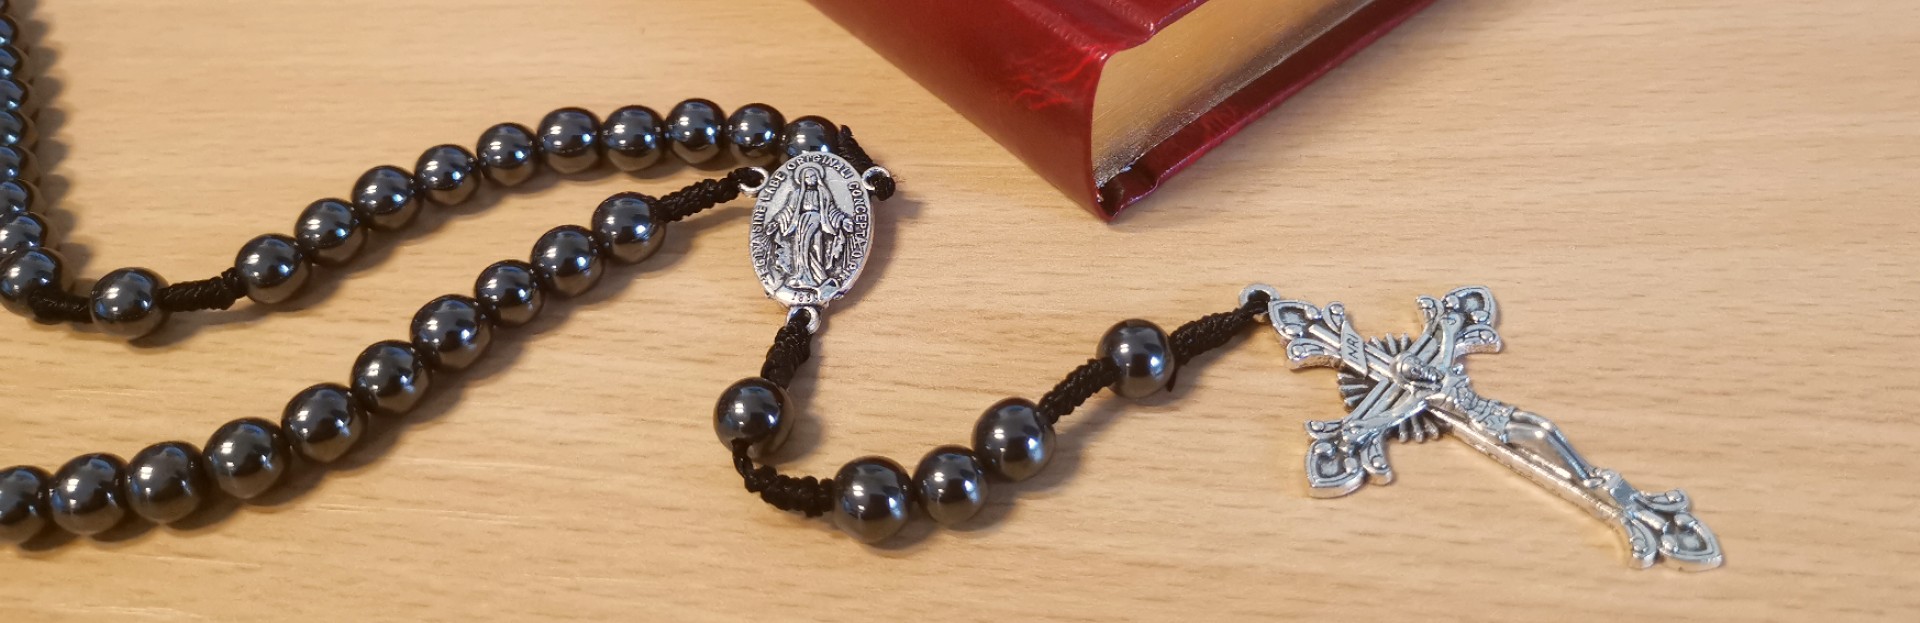 Rosary in Irish - Rosary Beads